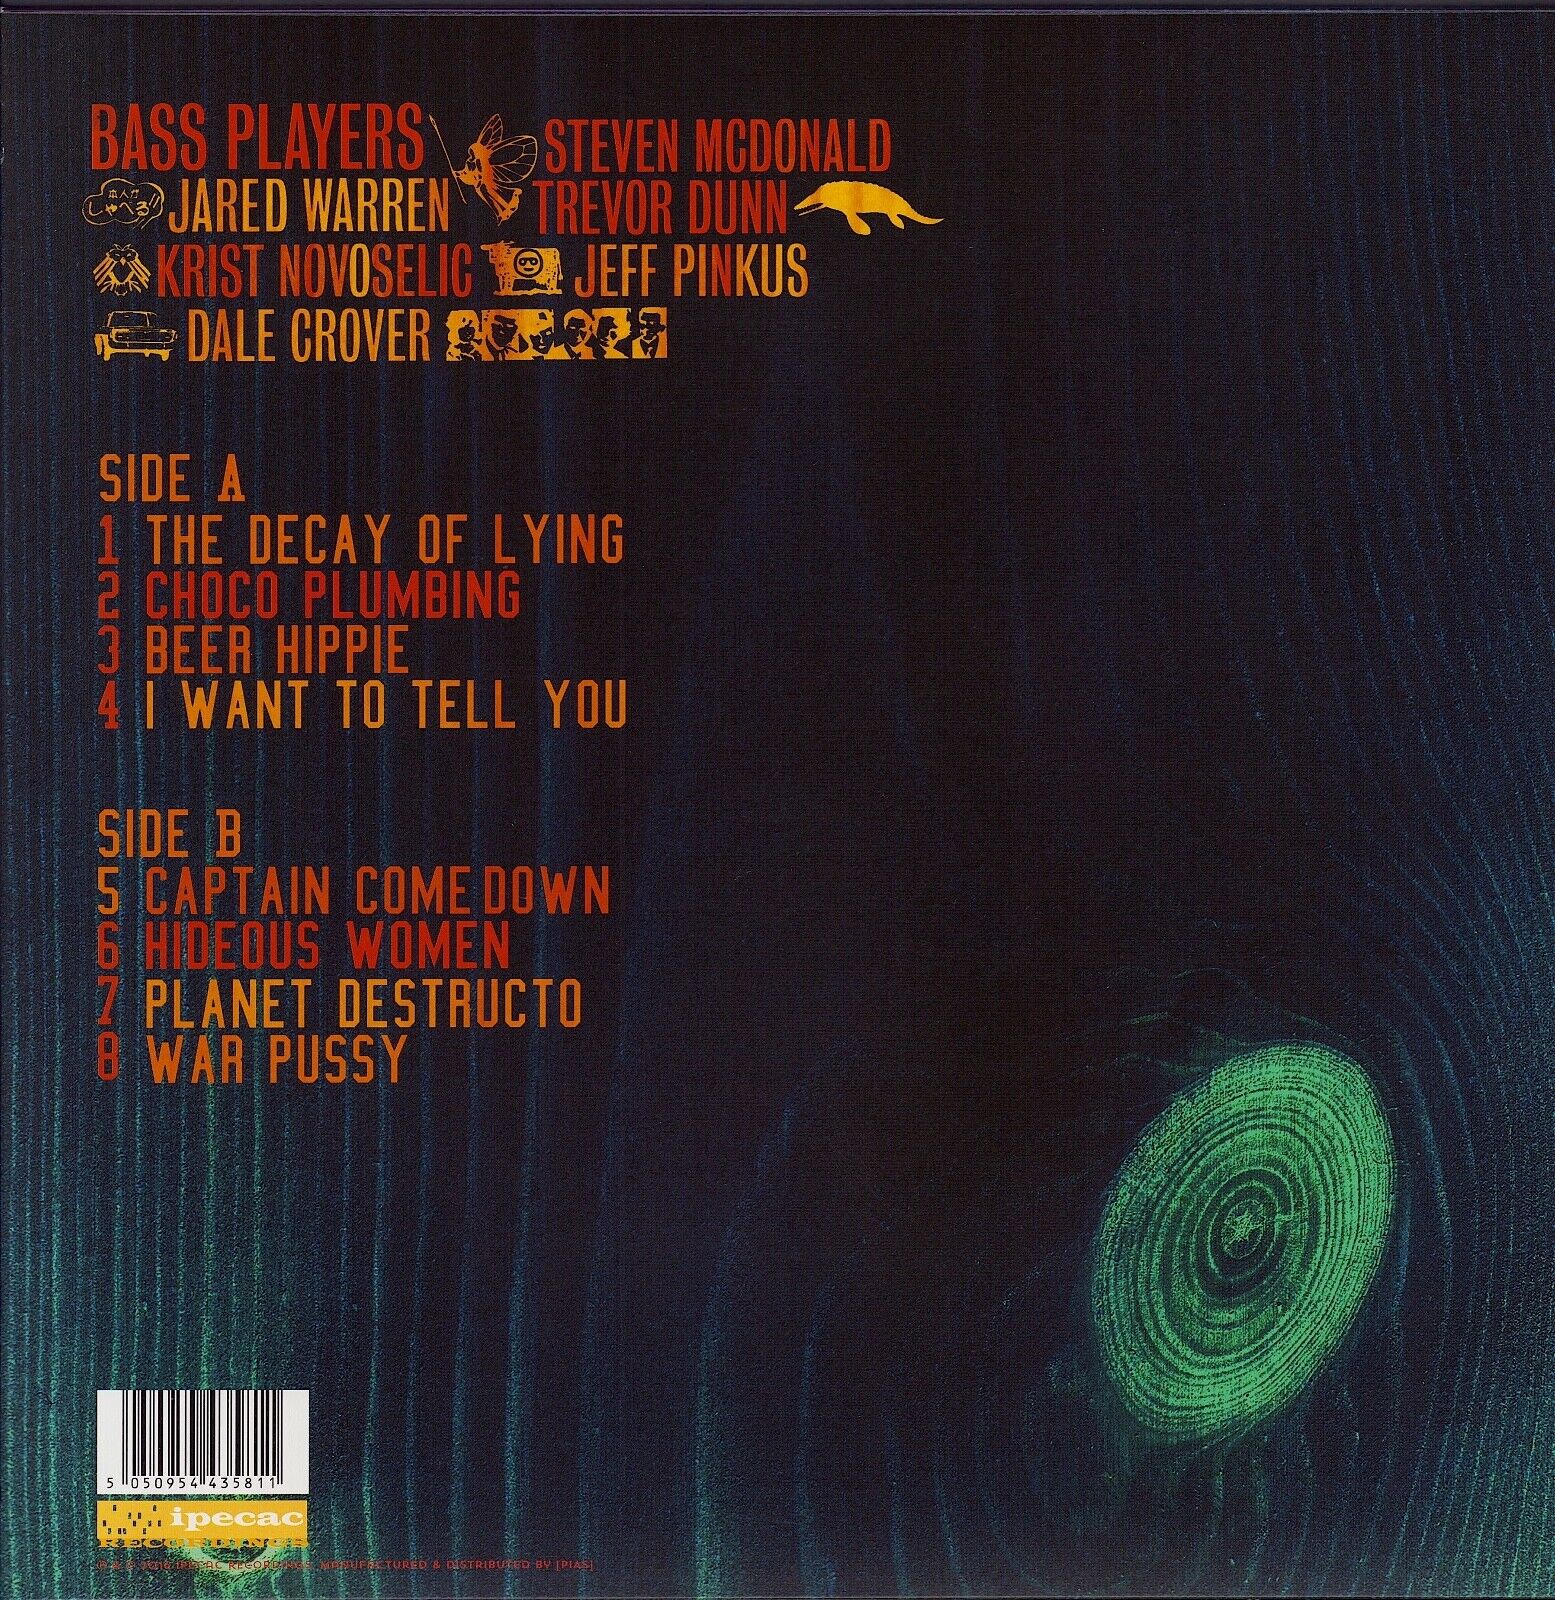 Melvins ‎- Basses Loaded Vinyl LP EU